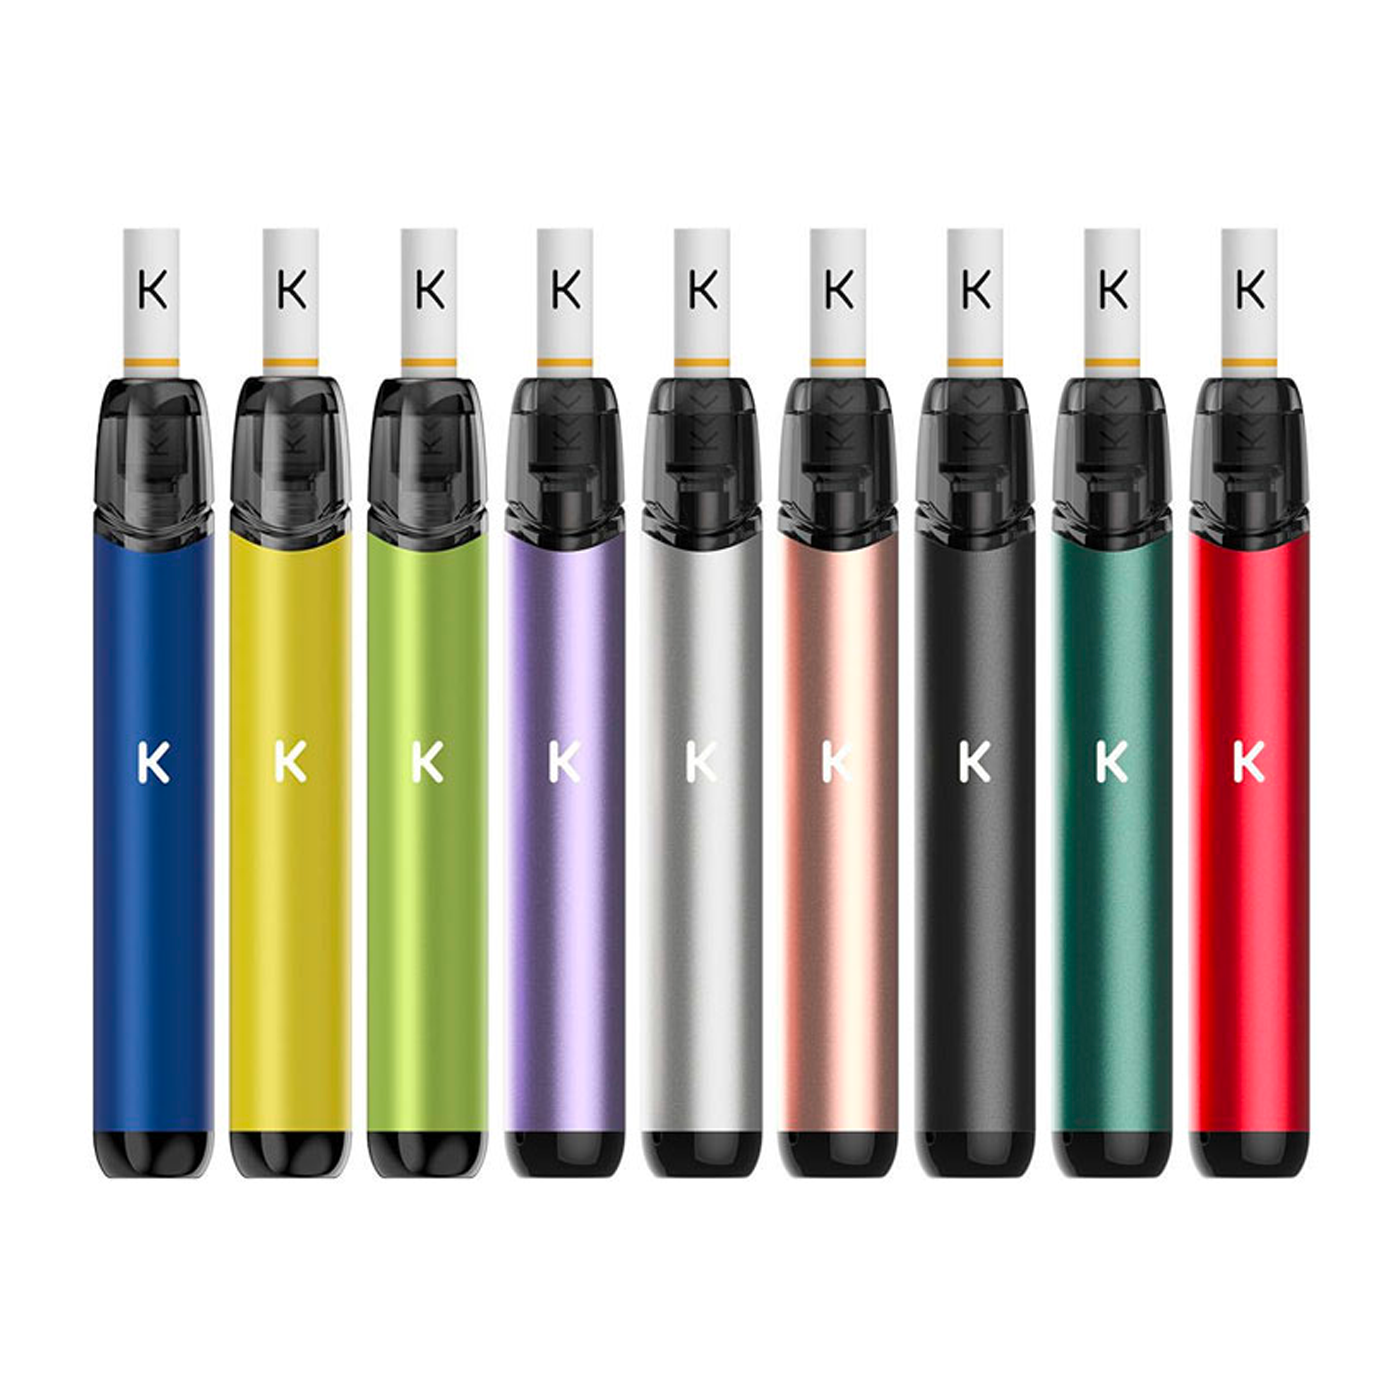 Kiwi vapor pen - FumoNonFumo online store